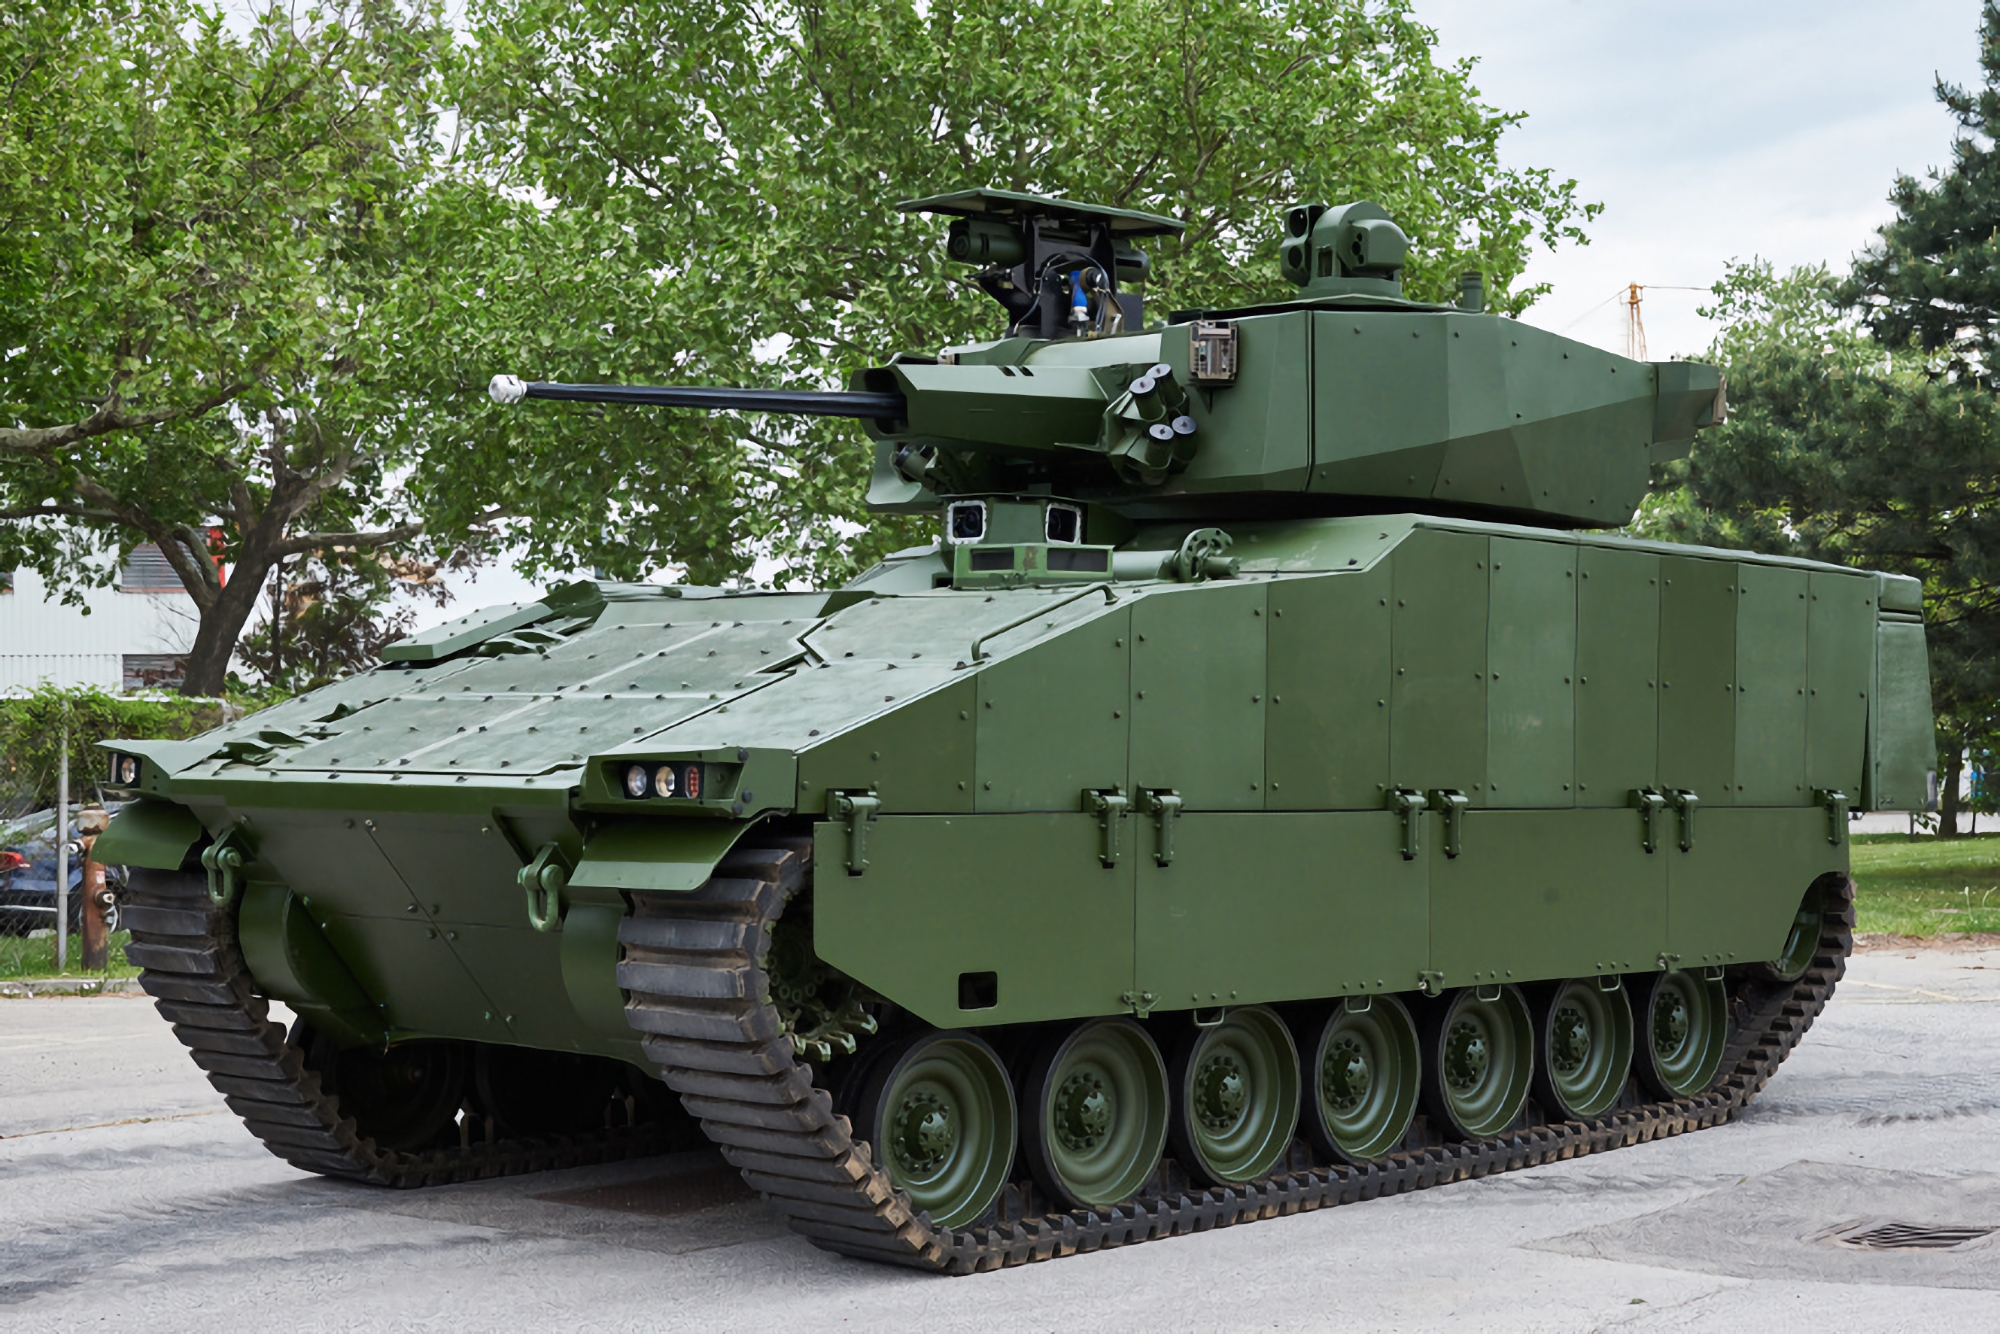 Czechosłowacka Grupa, General Dynamics i Ukrainian Armor mogą zlokalizować produkcję bojowych wozów piechoty ASCOD na Ukrainie